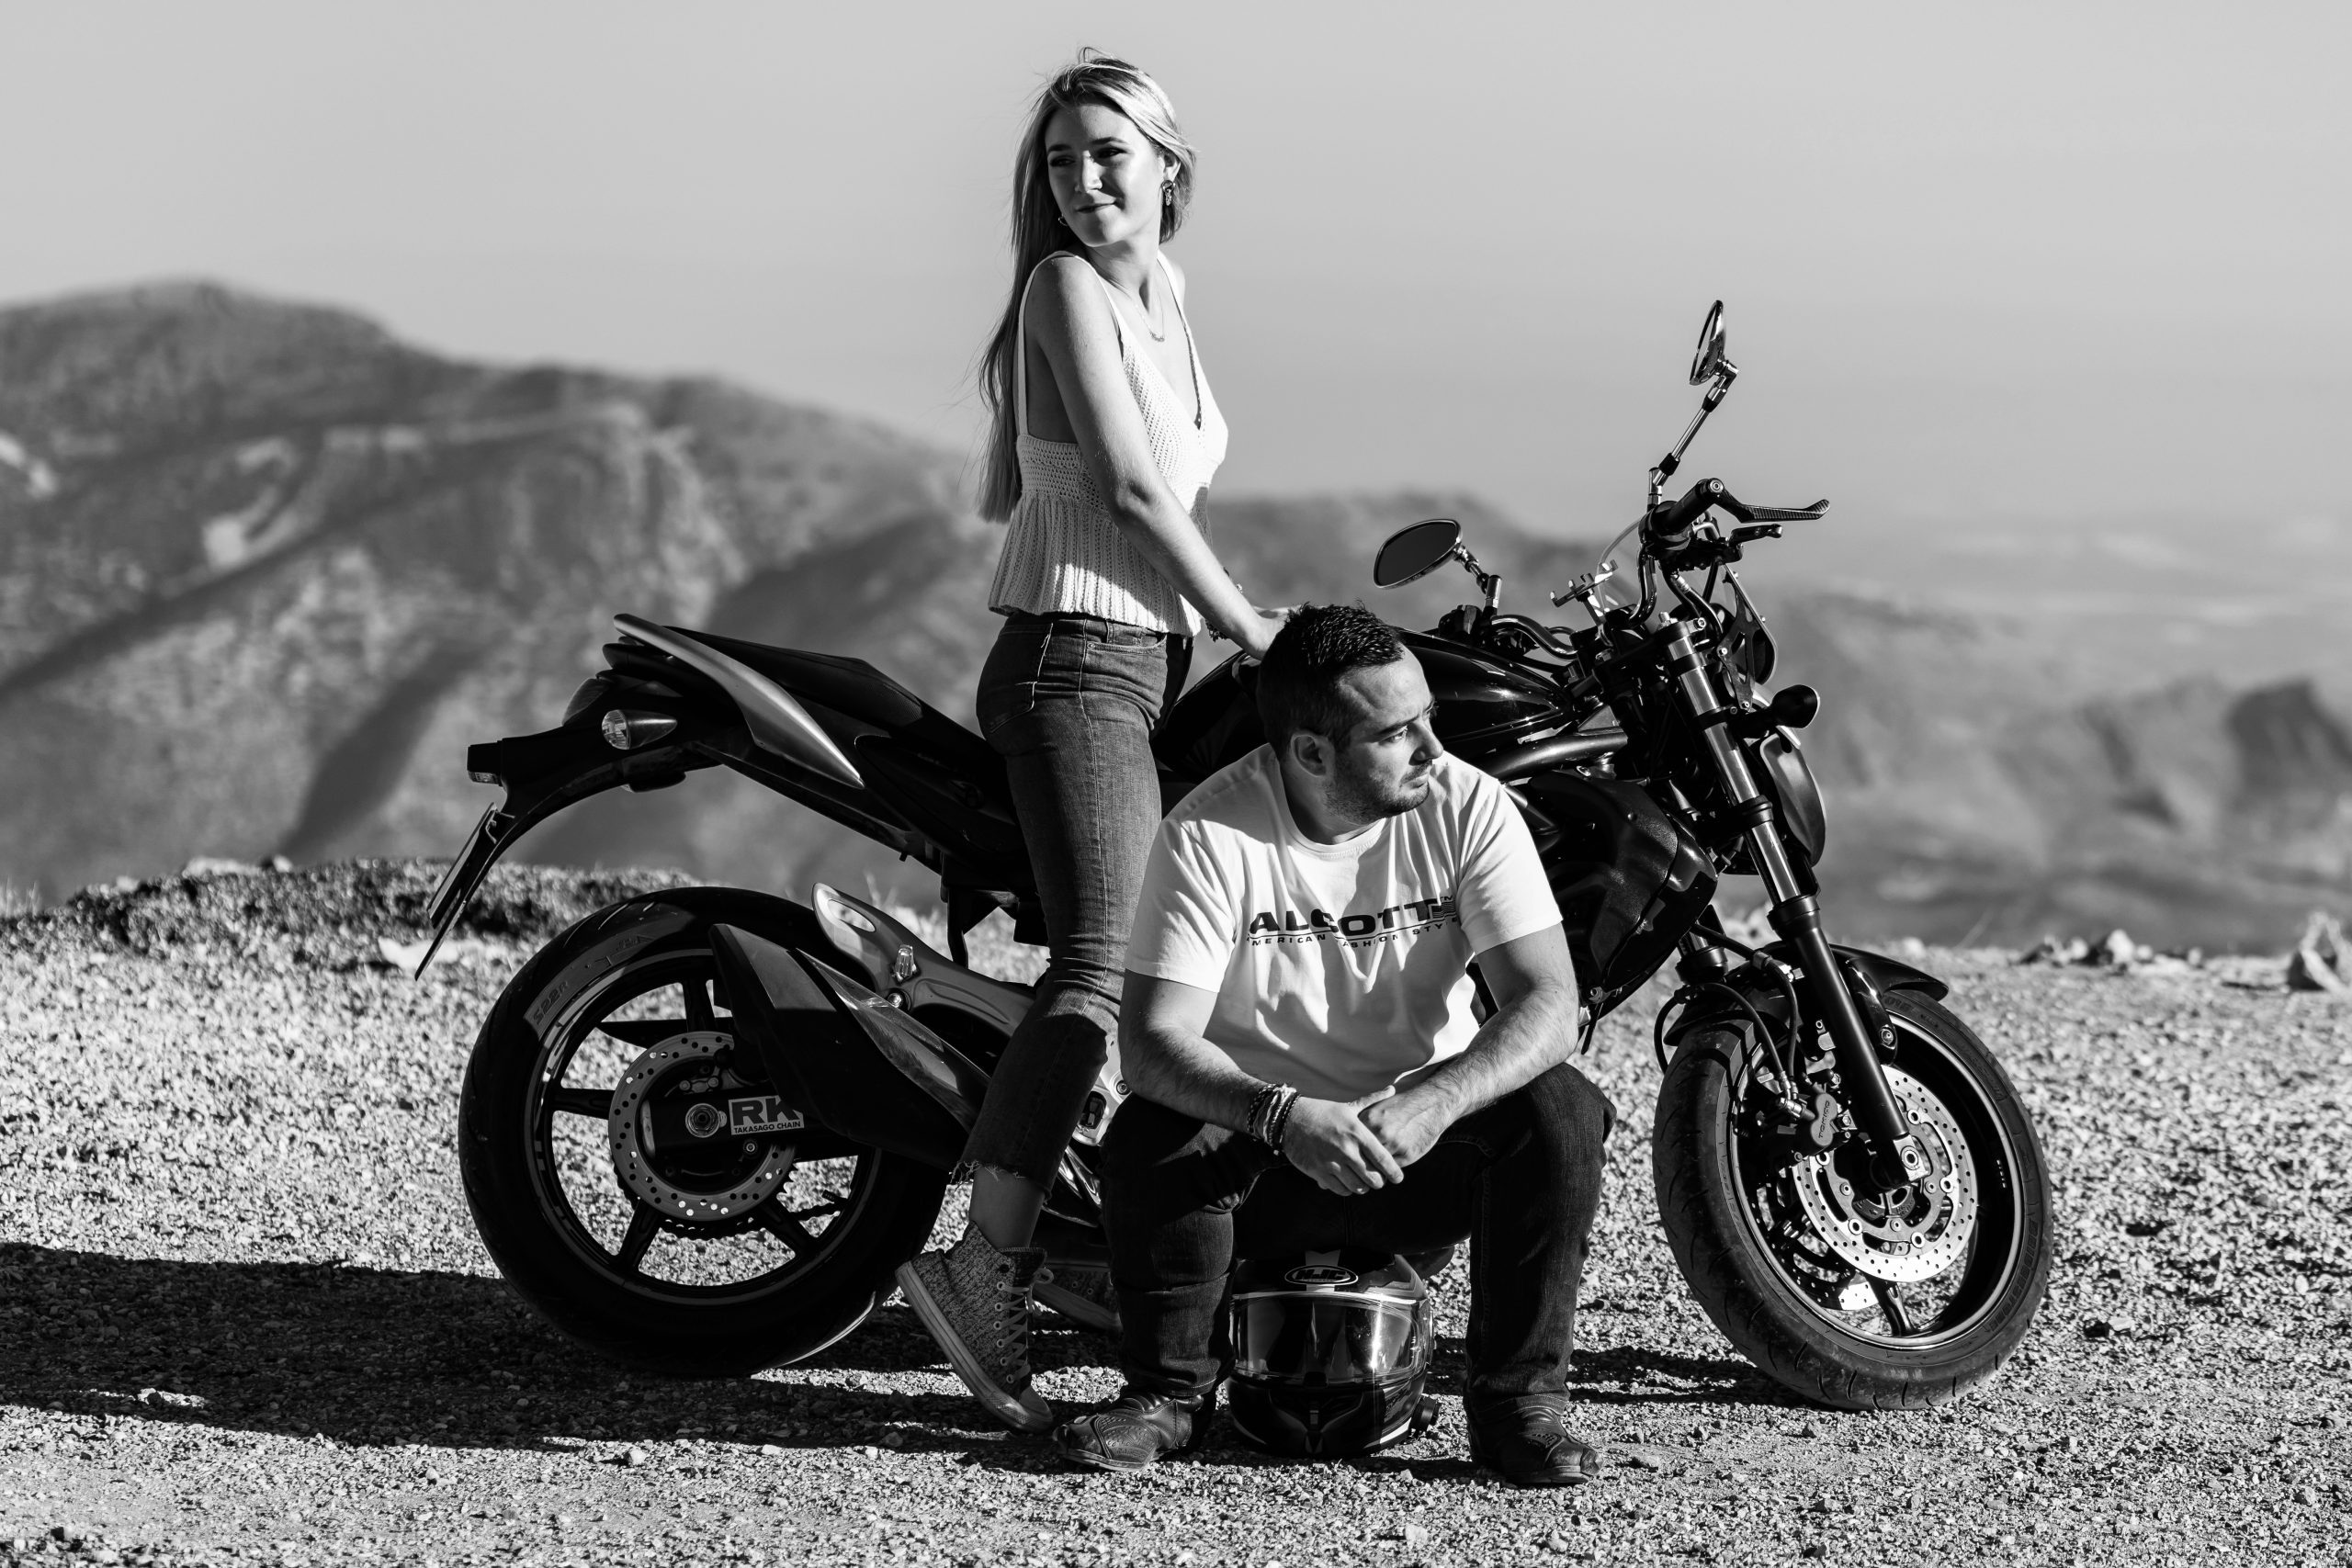 Fotografía en blanco y negro de una pareja y una moto